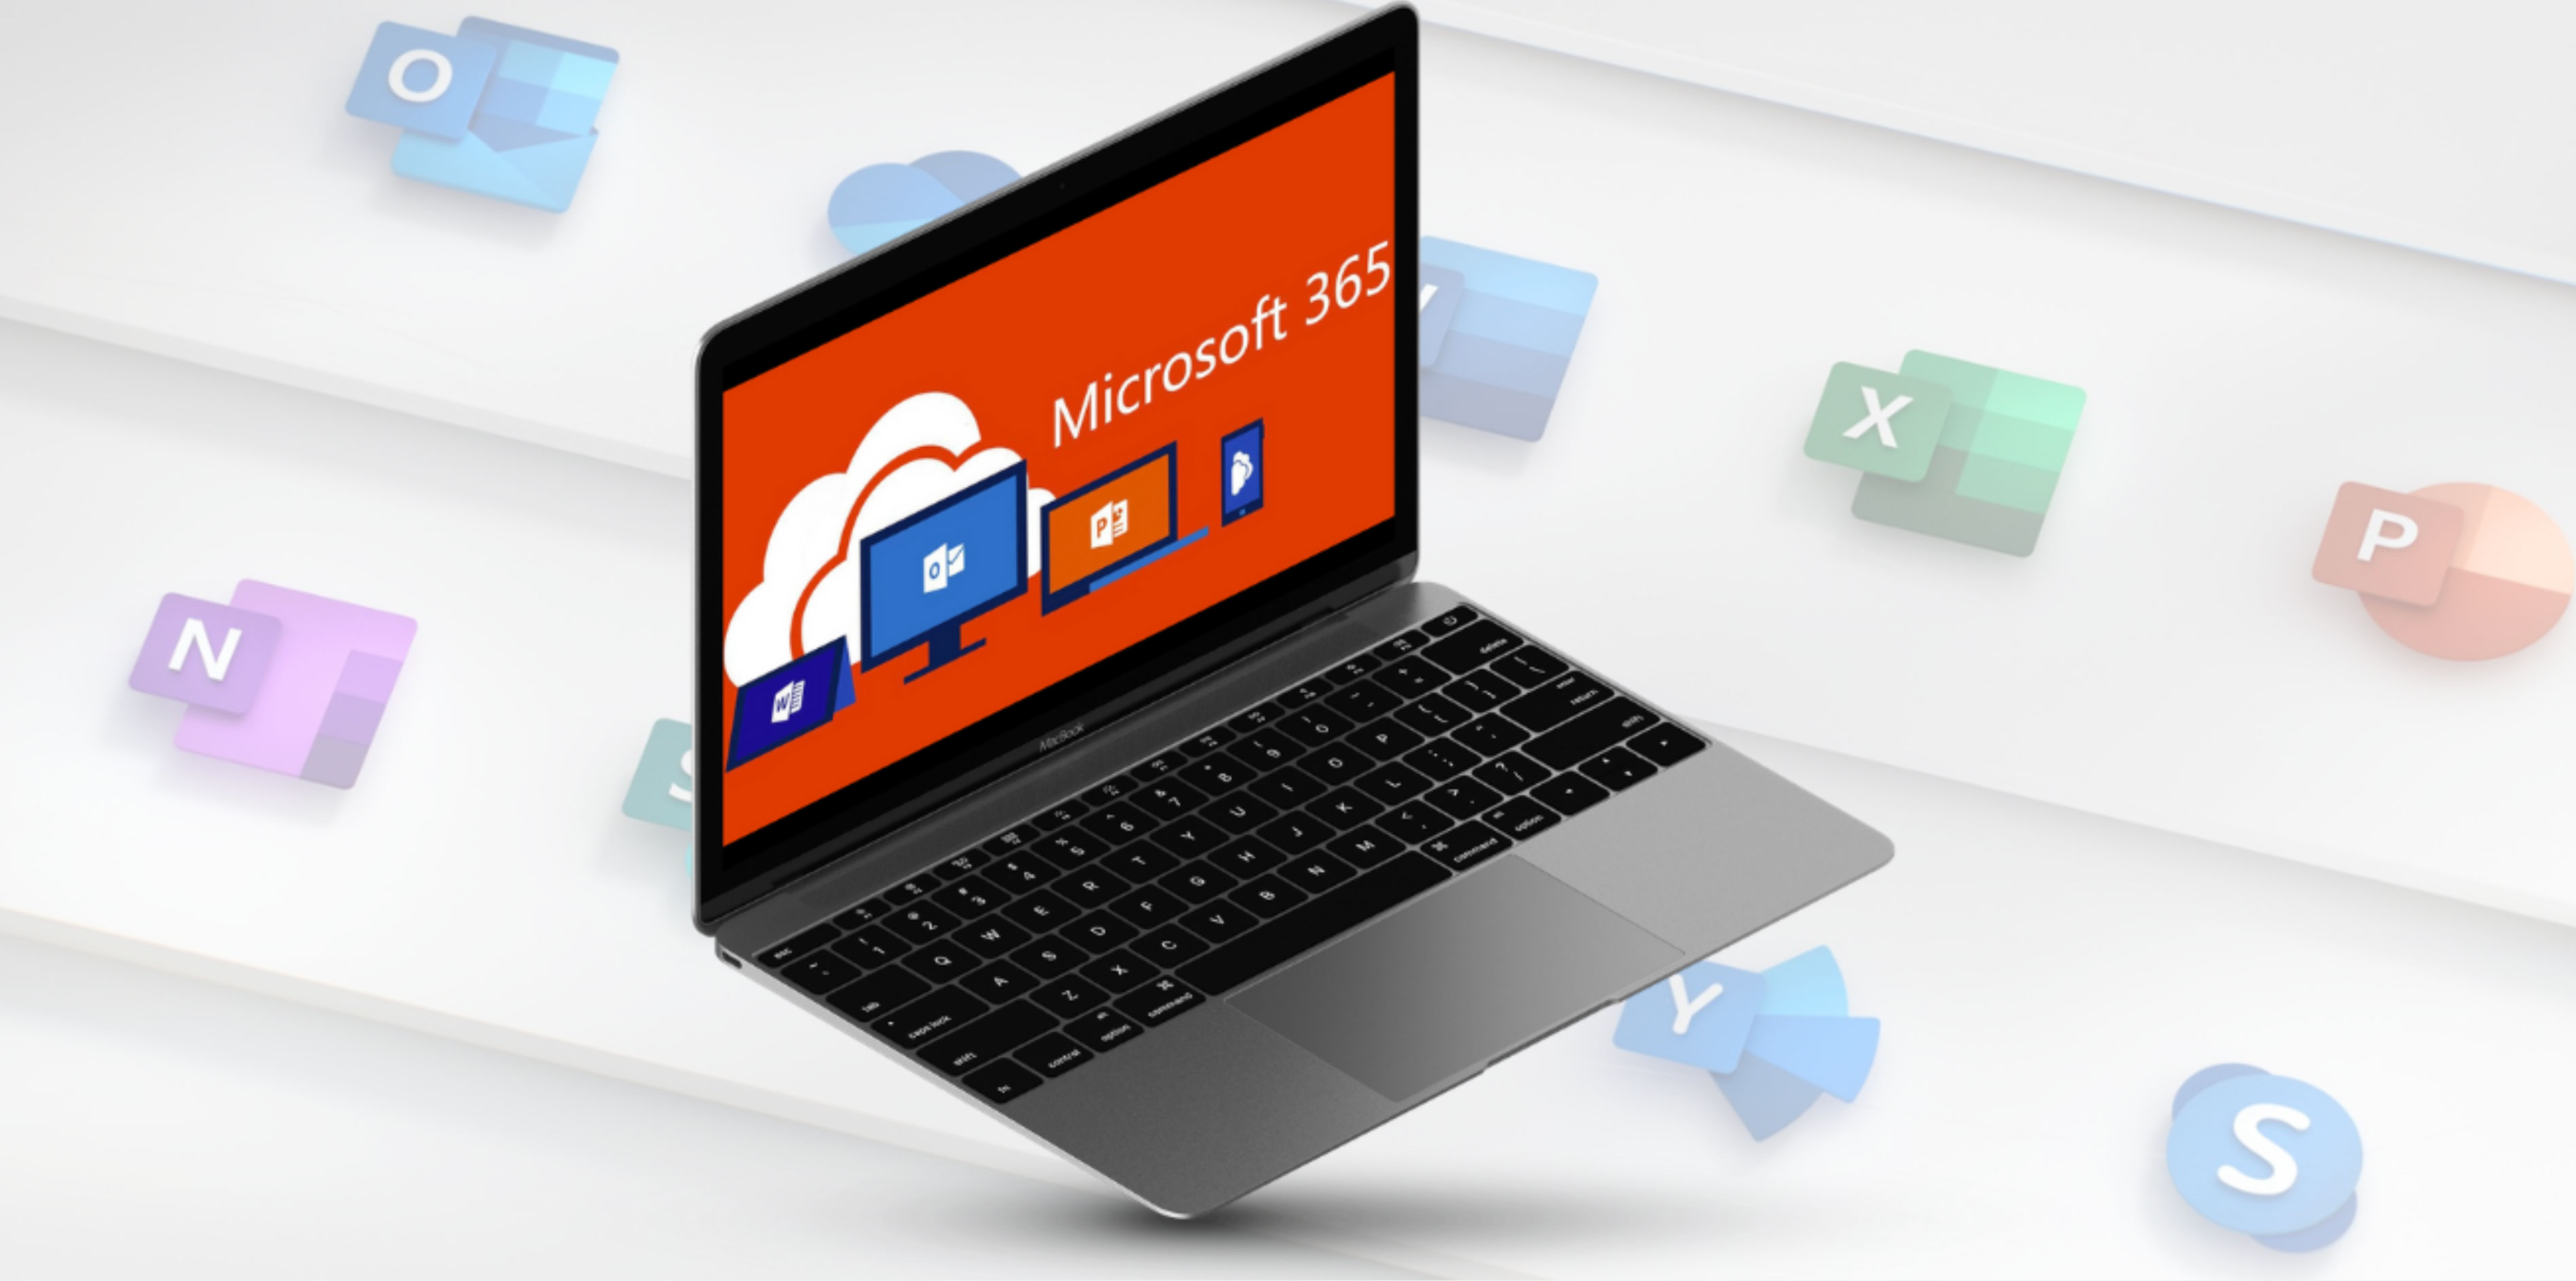 Affichage de Microsoft 365 sur l'ordinateur portable